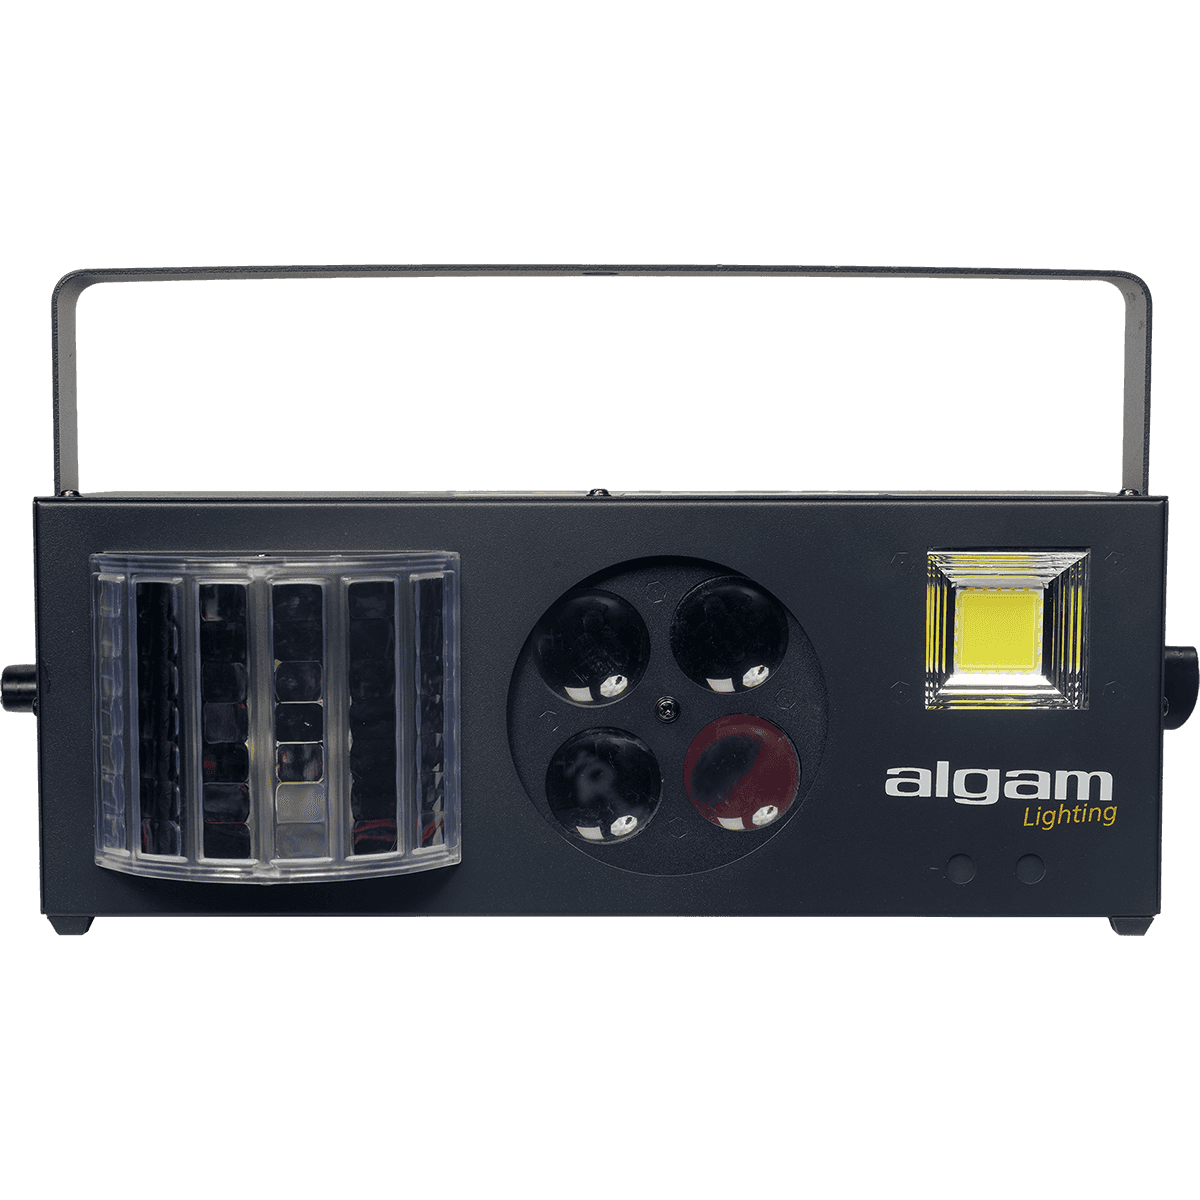 ALGAM LIGHTING Hybrid 4